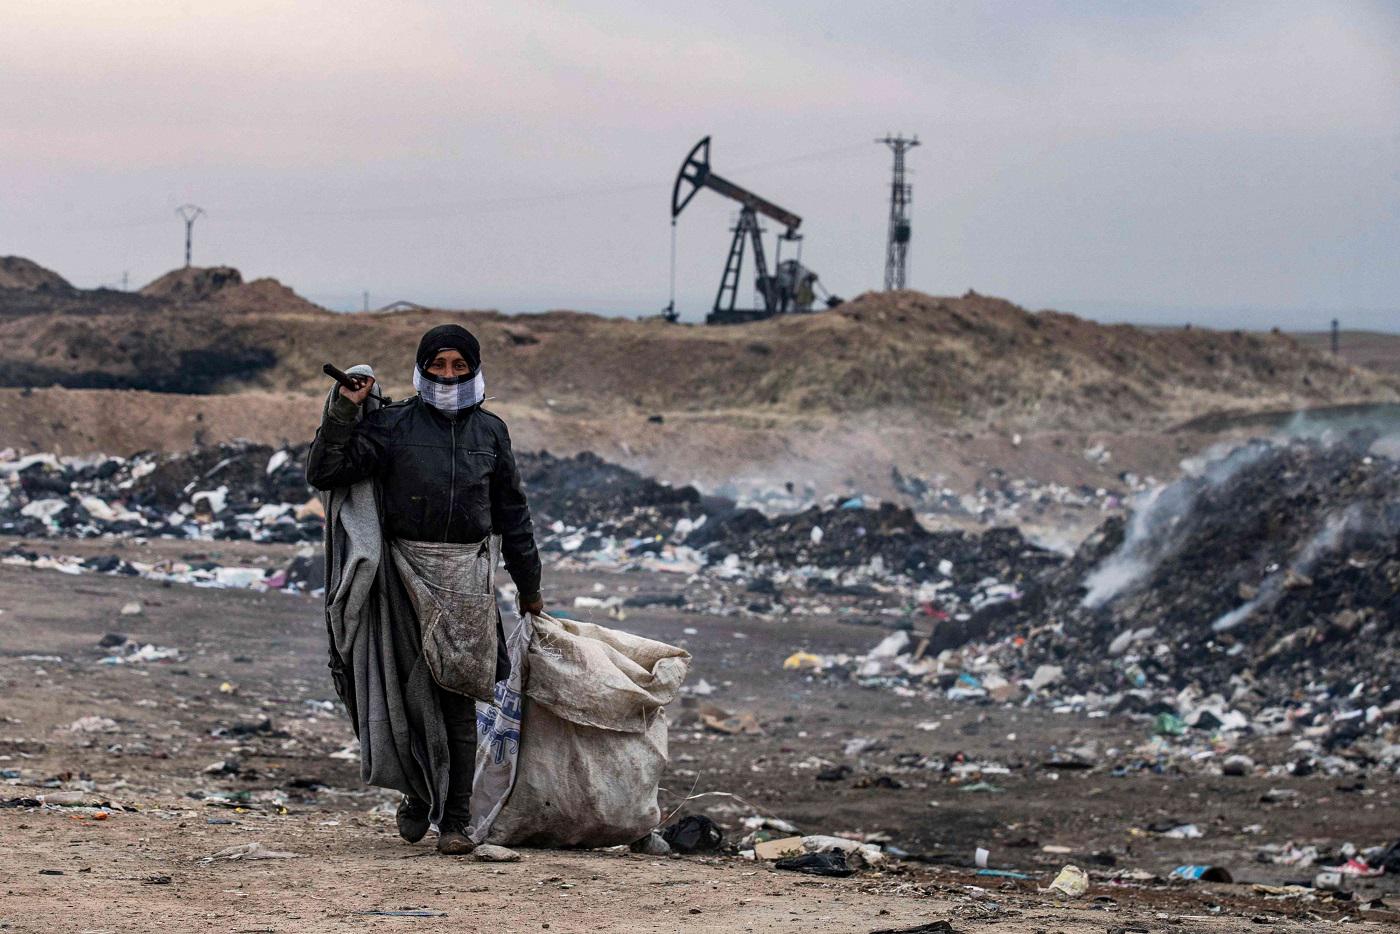 شمال سوريا يزرح تحت نير الفقر